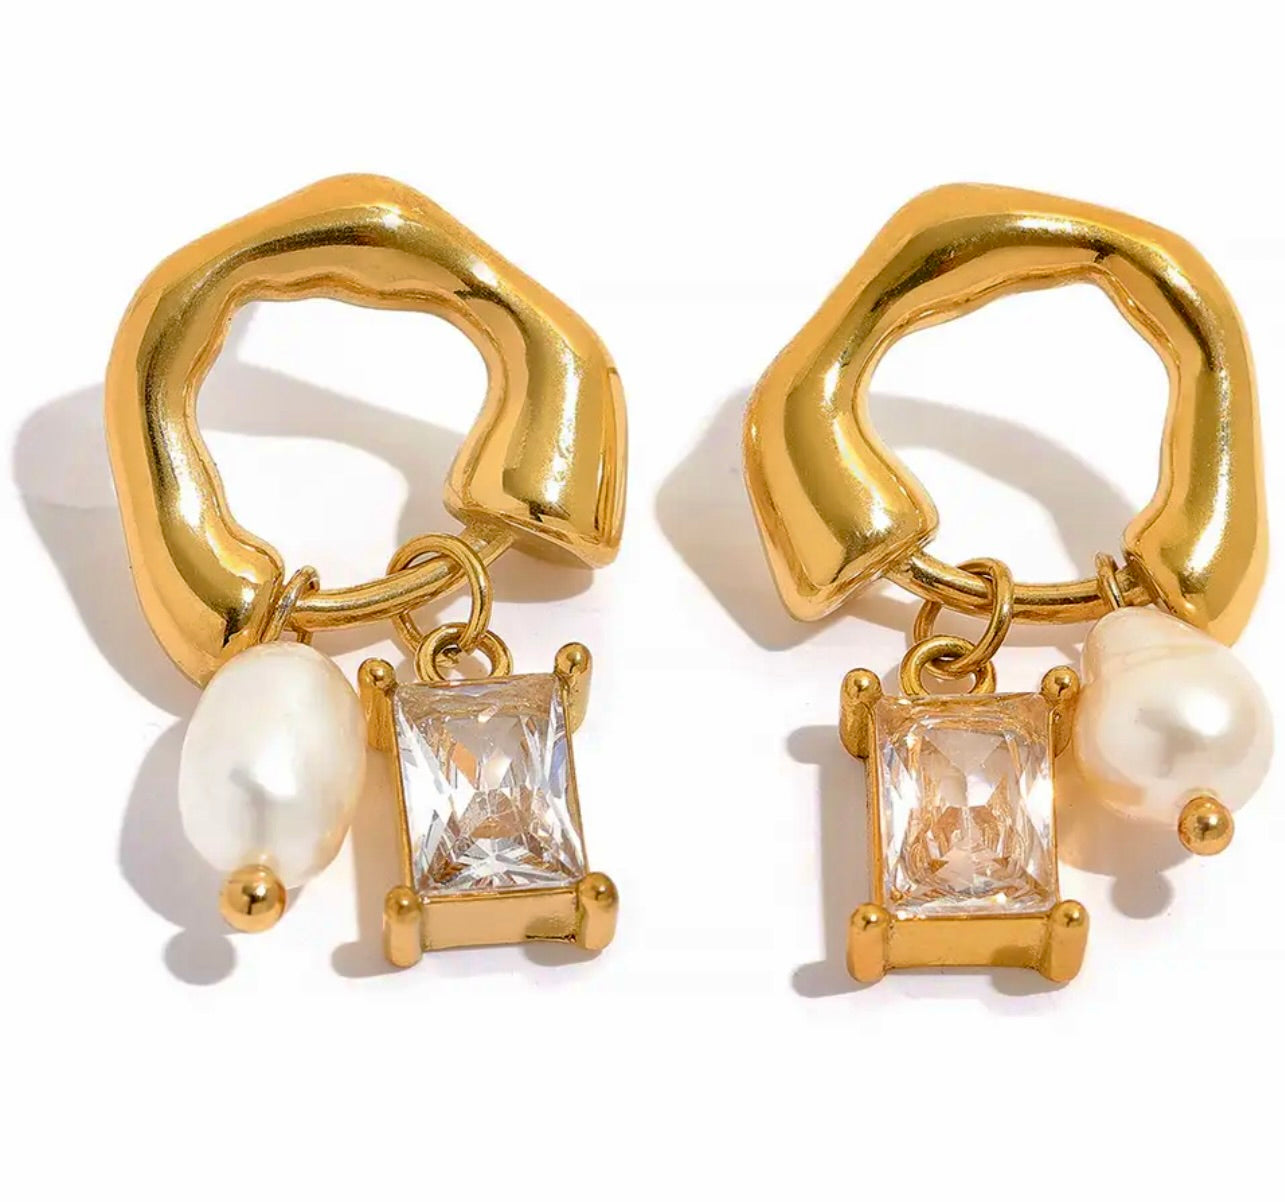 Erika Williner Designs - Florencia earrings